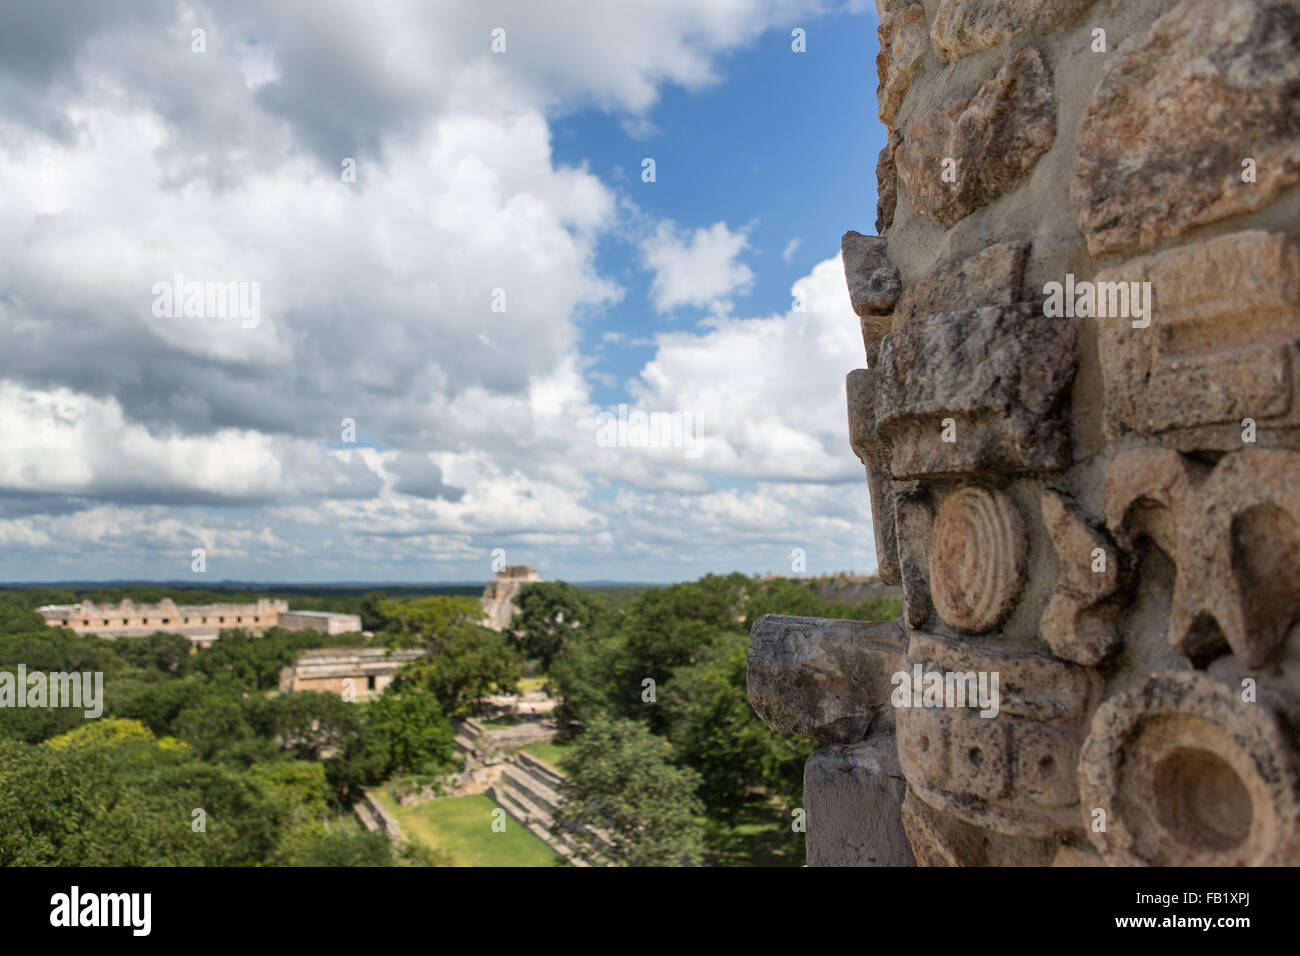 Ruines à Uxmal, Yucatan, Mexique. C'est une ancienne ville maya de la période classique. Banque D'Images